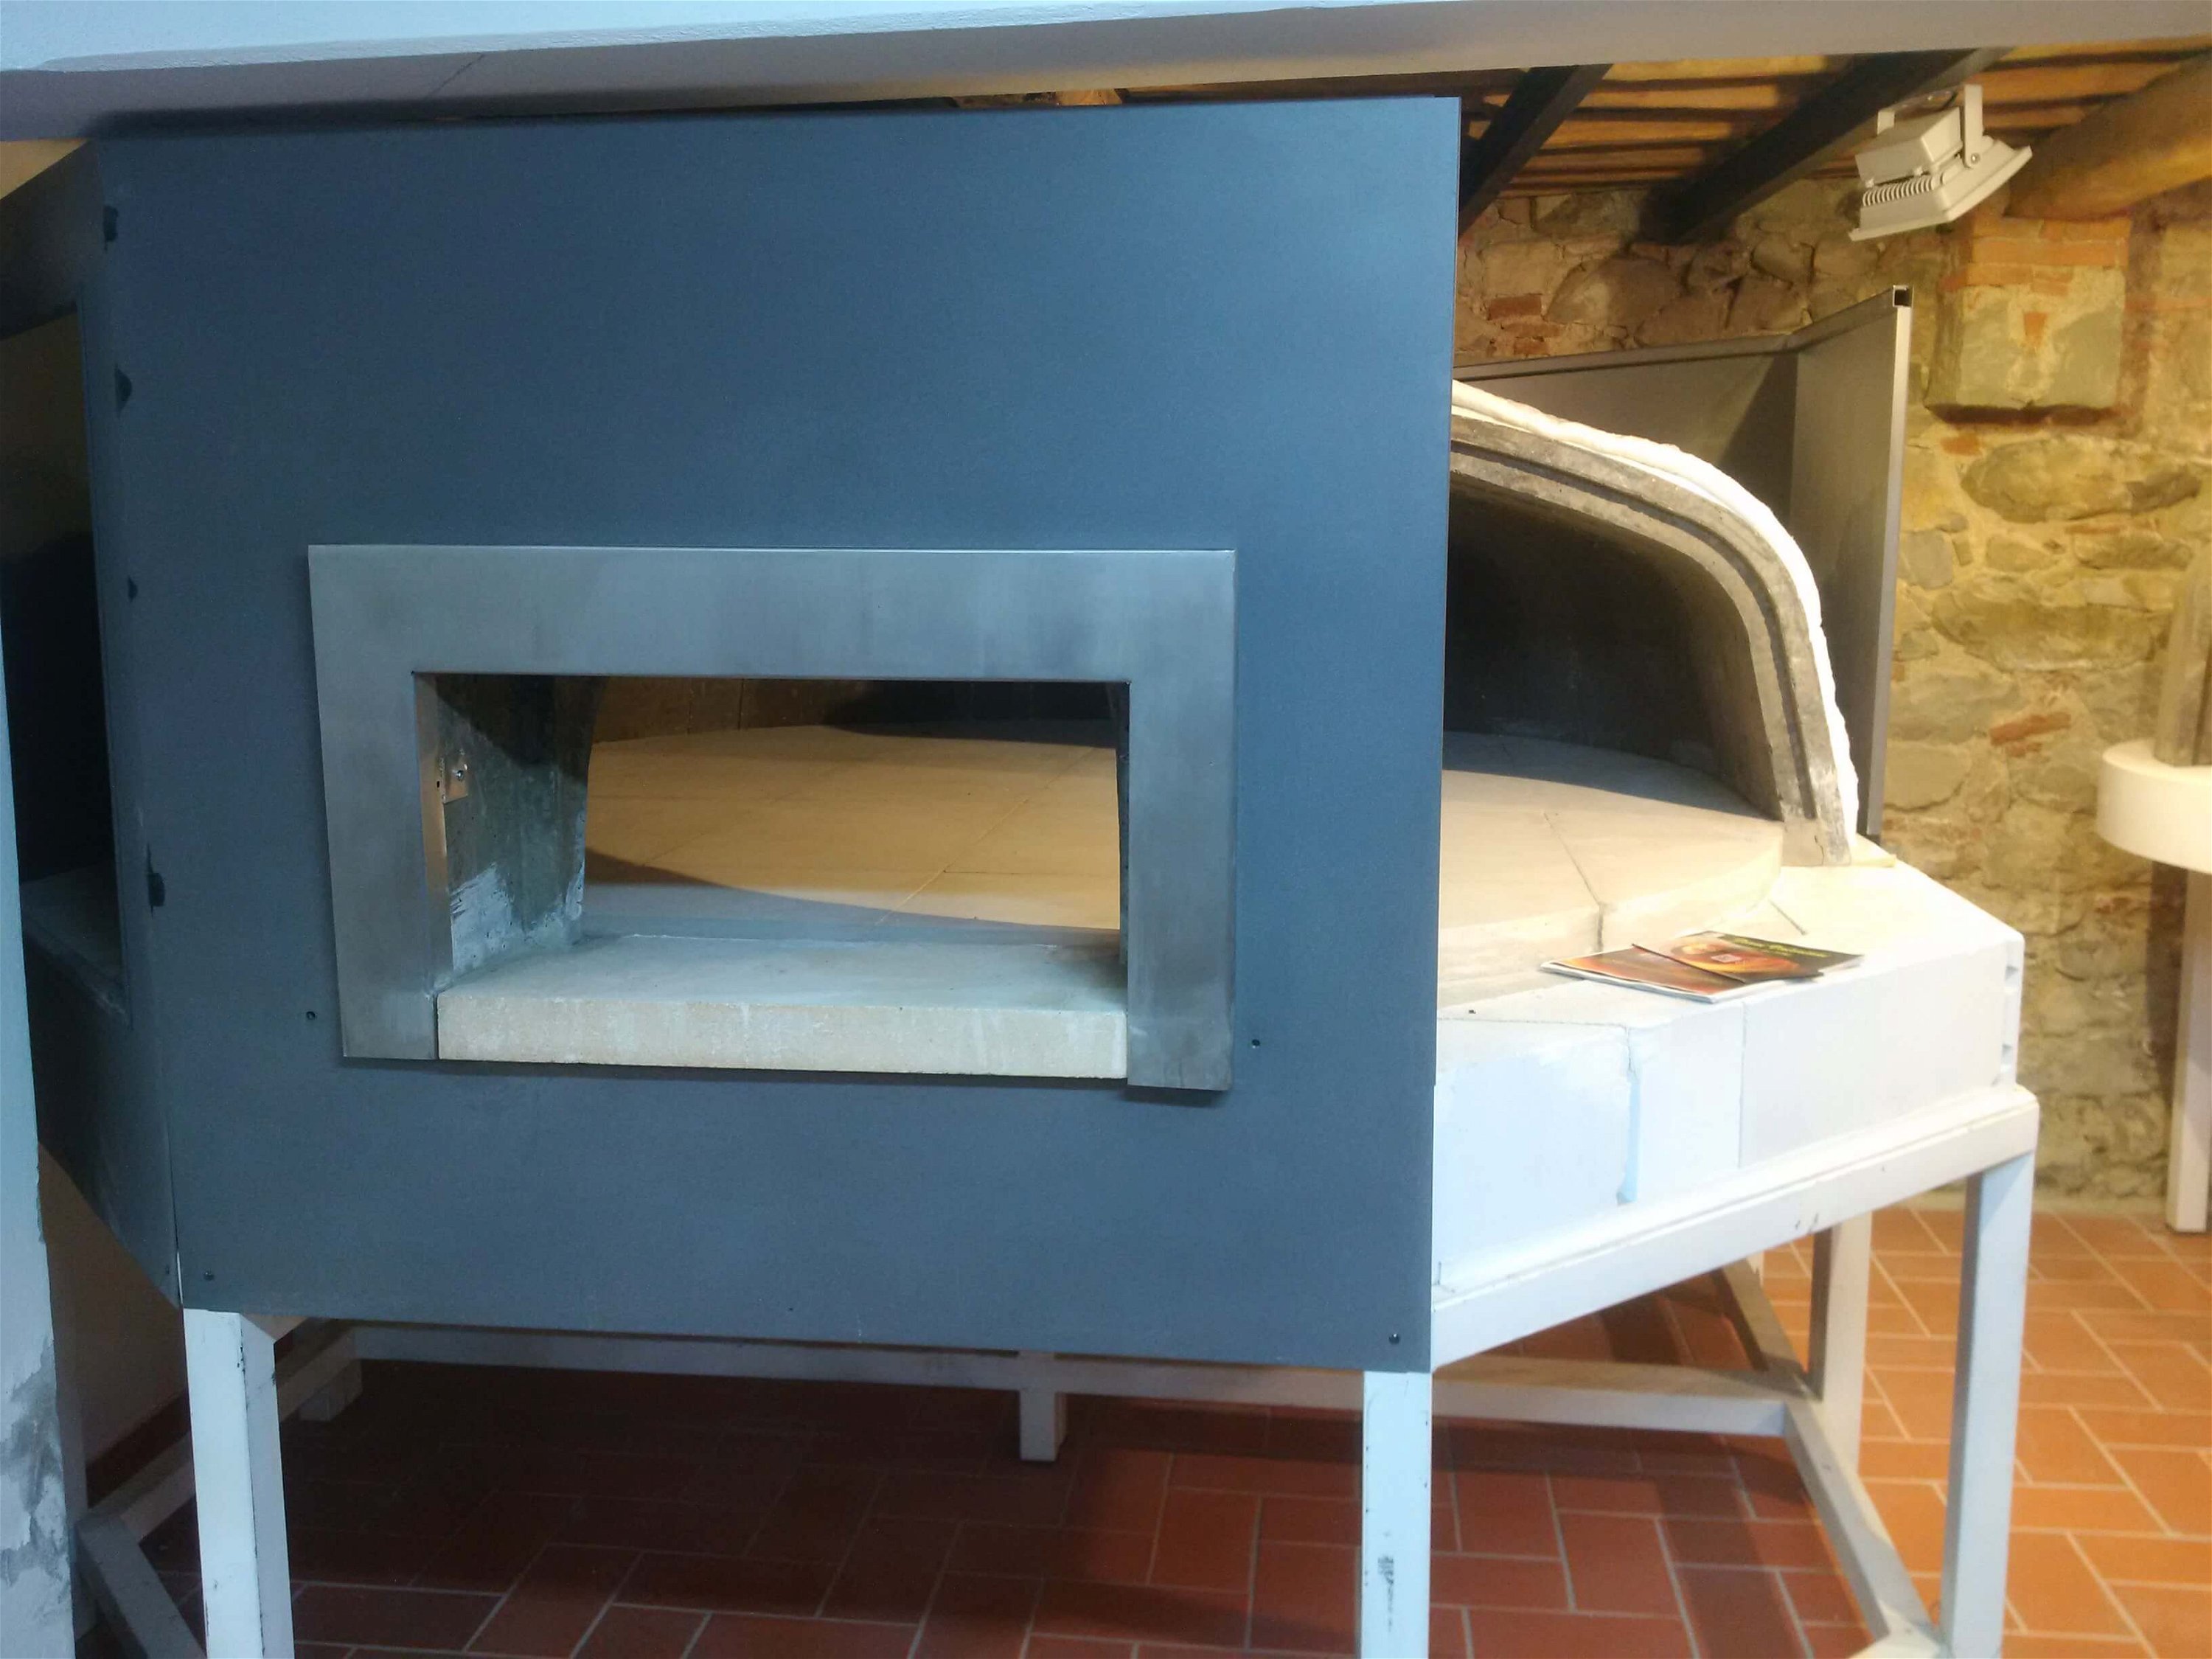 Professioneller Ofen für Bäckerei: Valoriani Vesuvio Maxi GR, Holz und Gas, 270x220cm